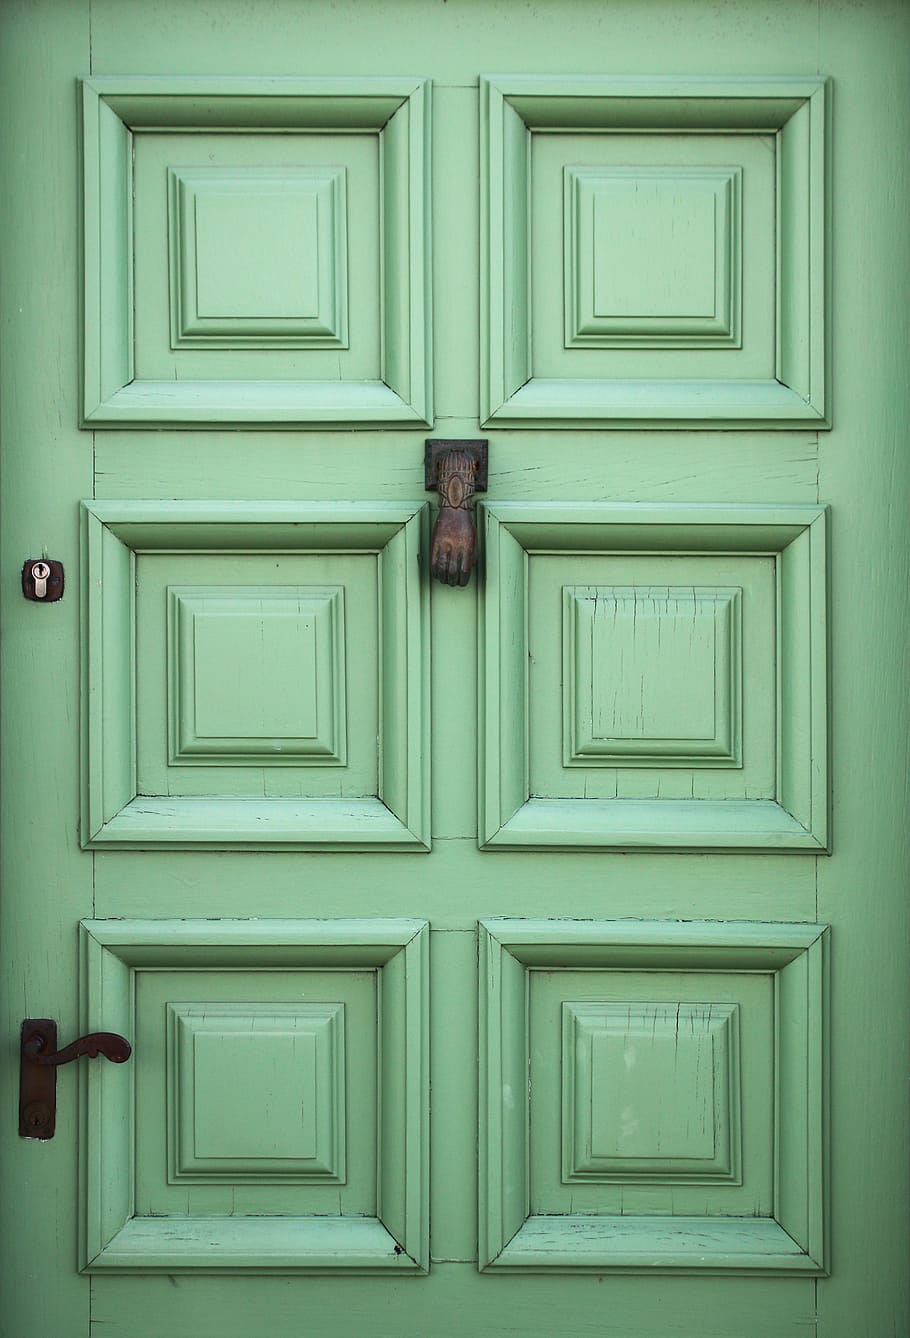 Puerta verde, puerta de madera verde de 6 paneles, entrada, puerta, cerrado, ninguna gente, arquitectura, madera - material, estructura construida, protección